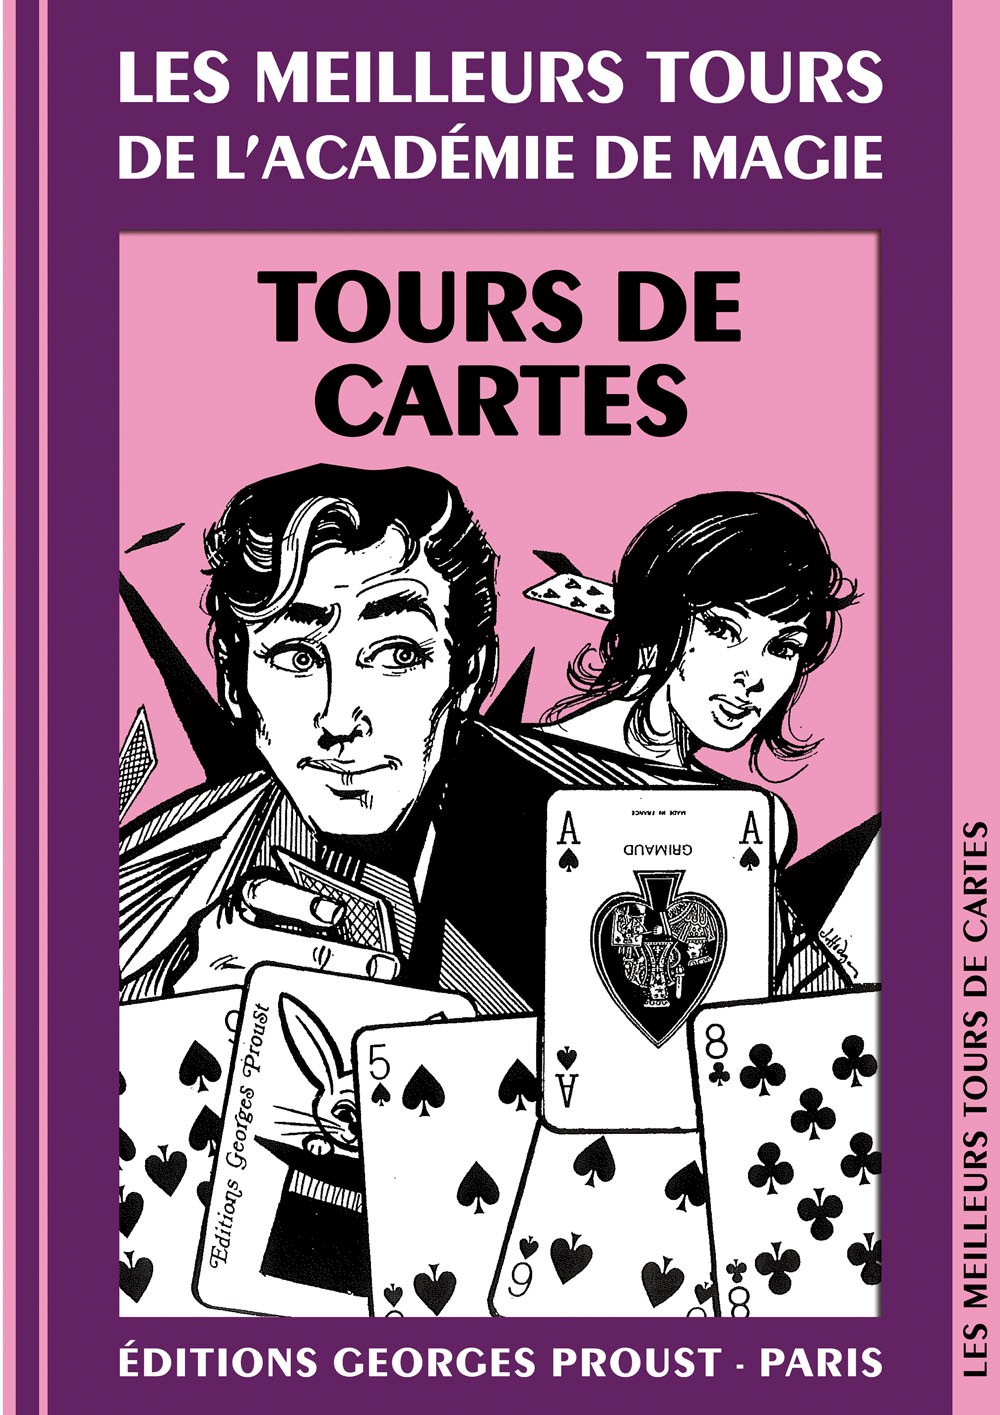 LES MEILLEURS TOURS DE CARTES - Académie de magie